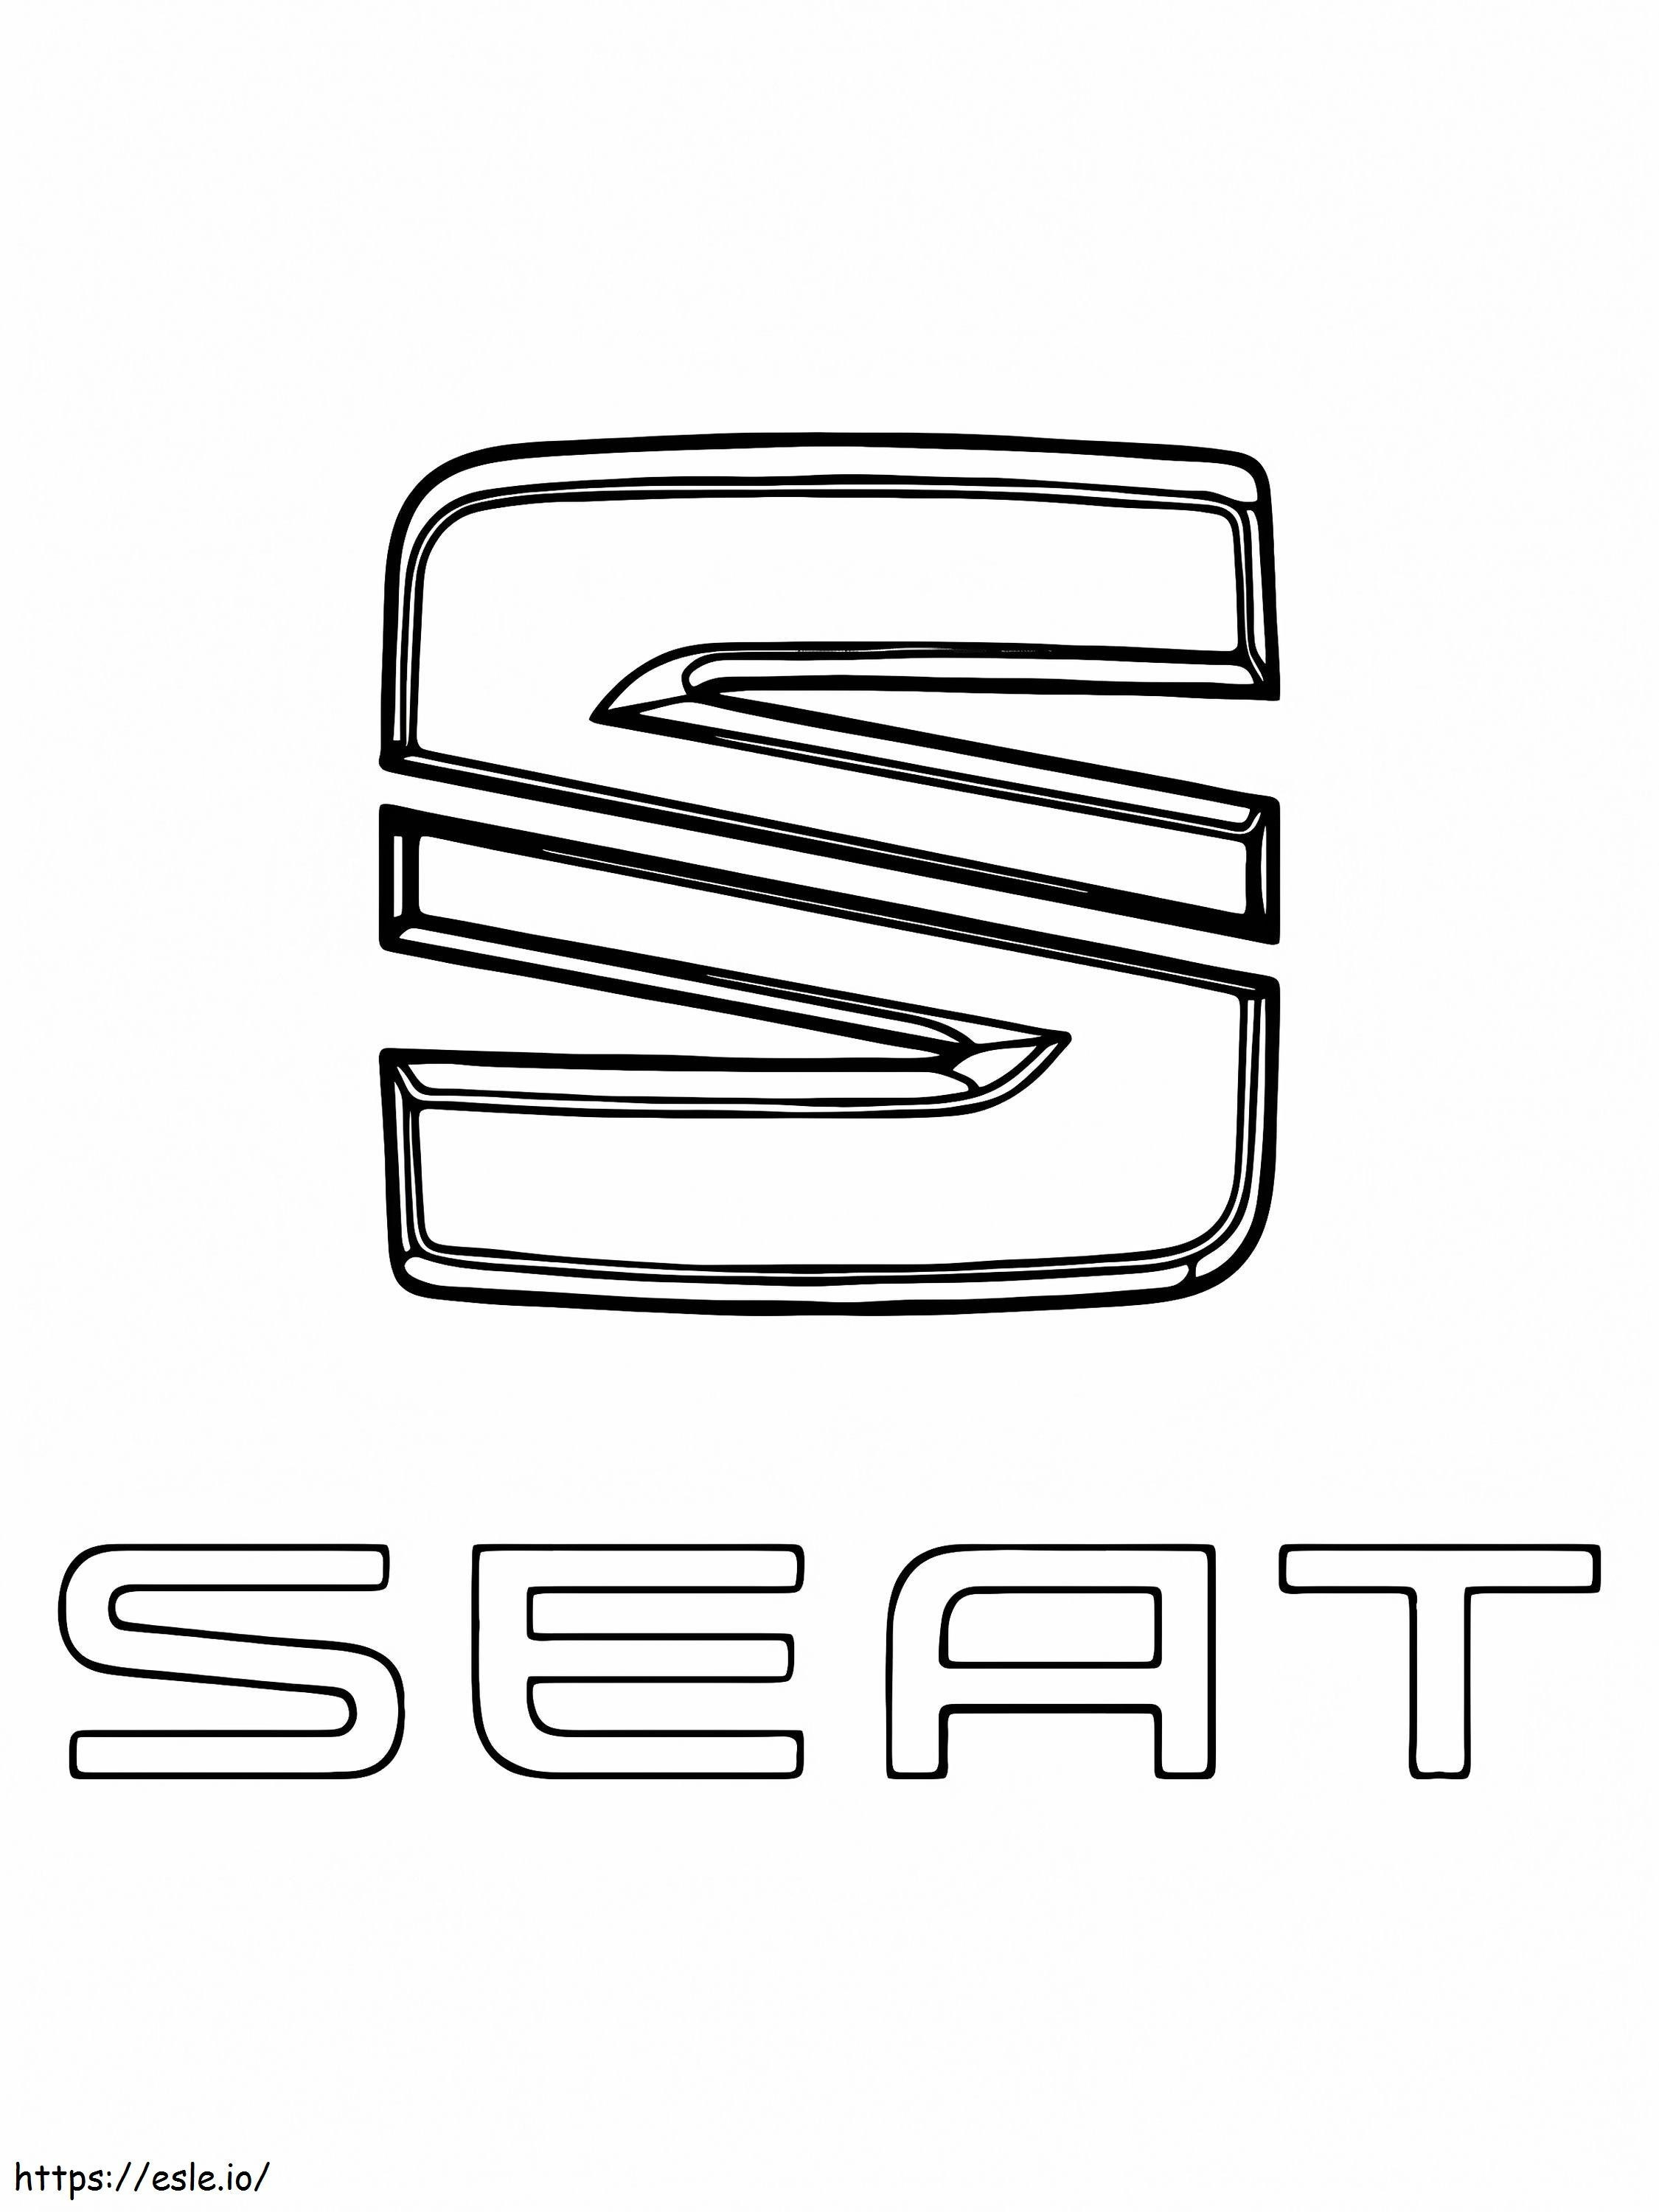 Logo dell'auto con sedile da colorare